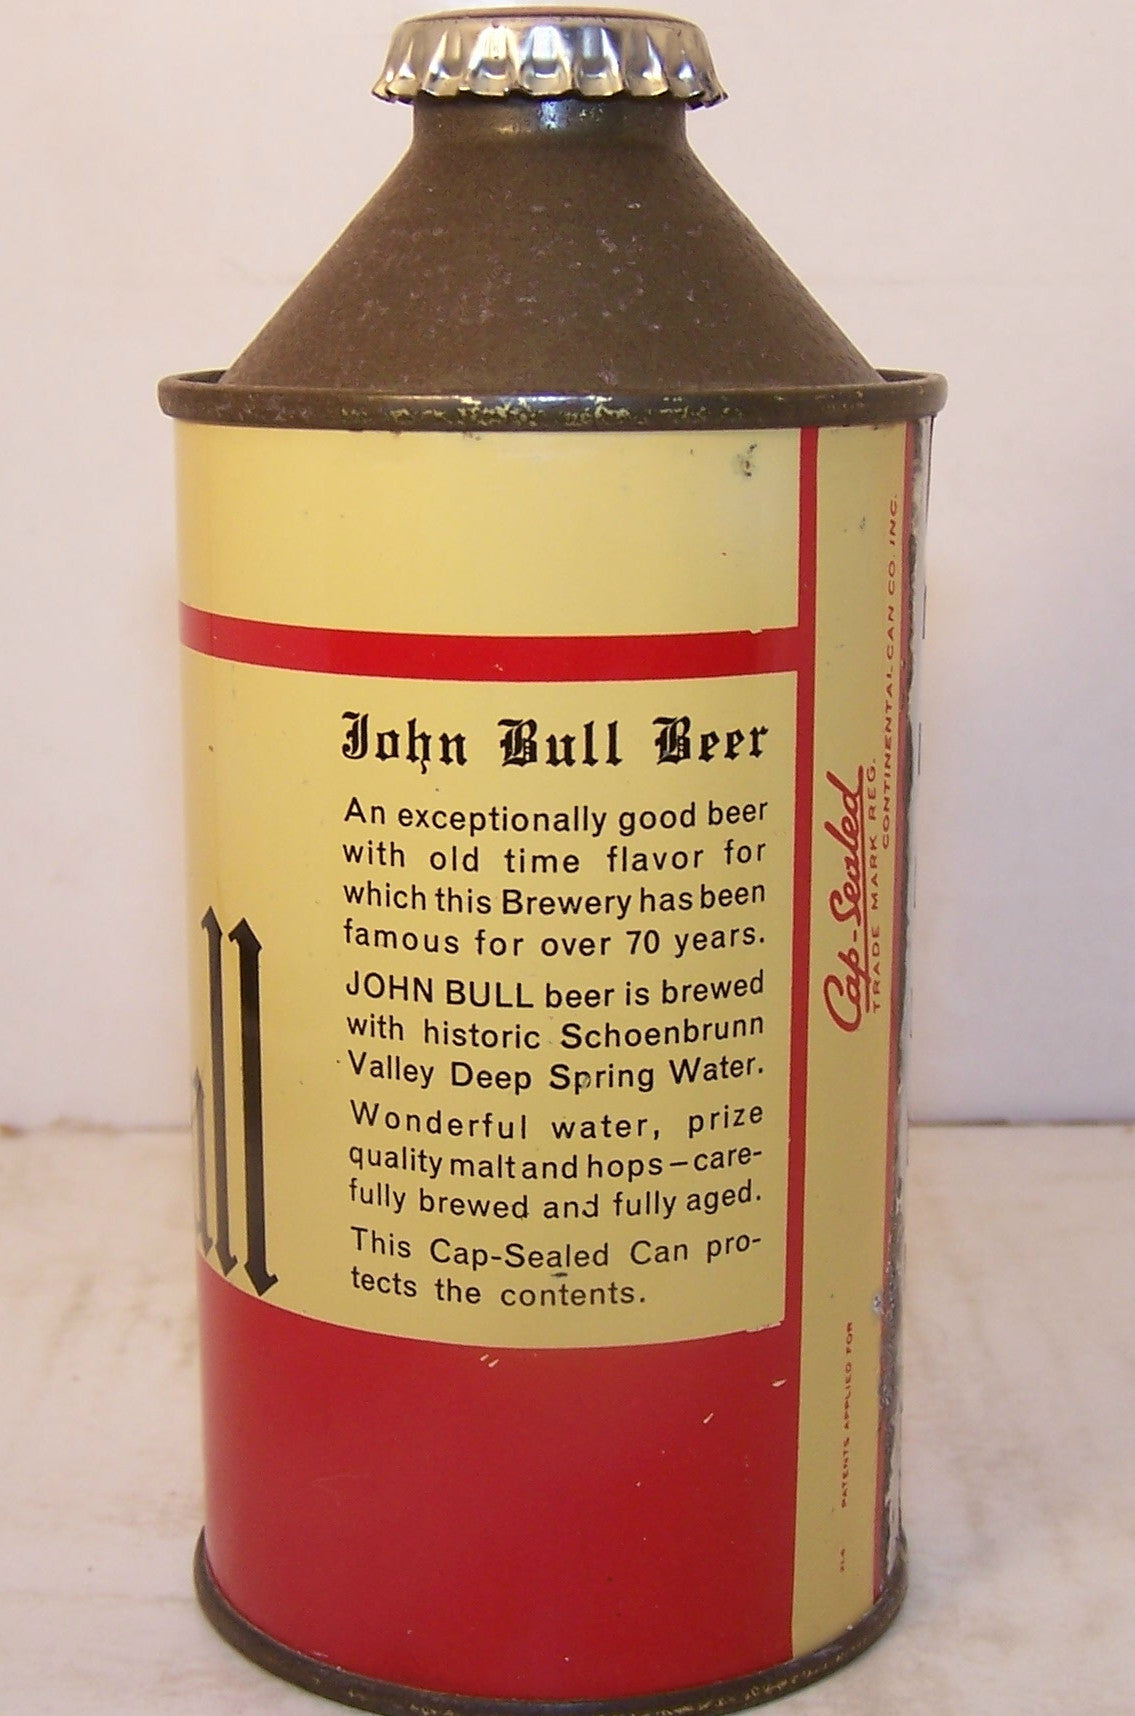 John Bull Beer, USBC 170-17, Grade 1/1+ Sold on 3/22/15